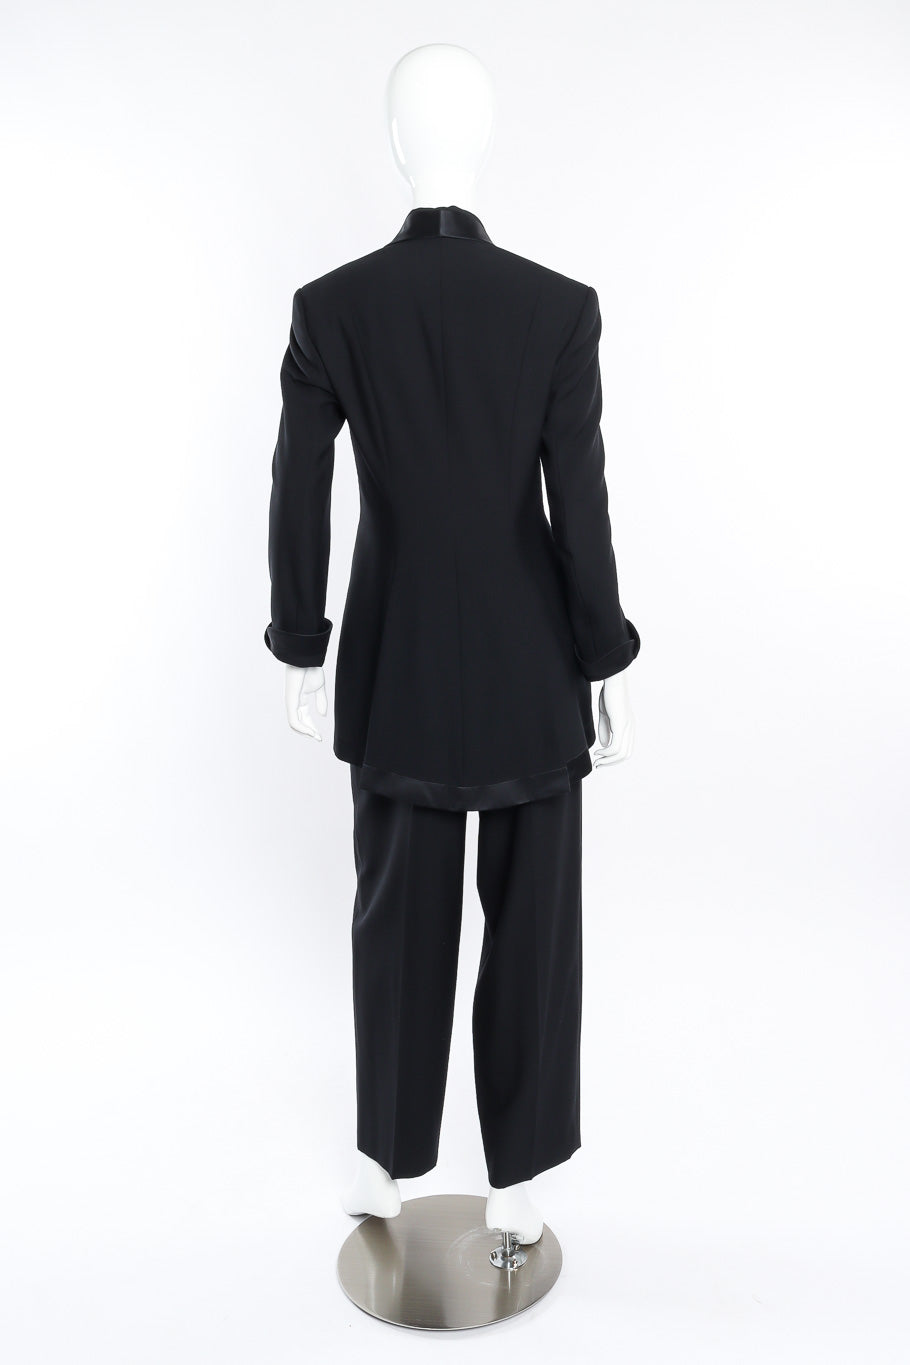 Vintage Richard Tyler Tuxedo Pant Suit back view on mannequin @Recessla